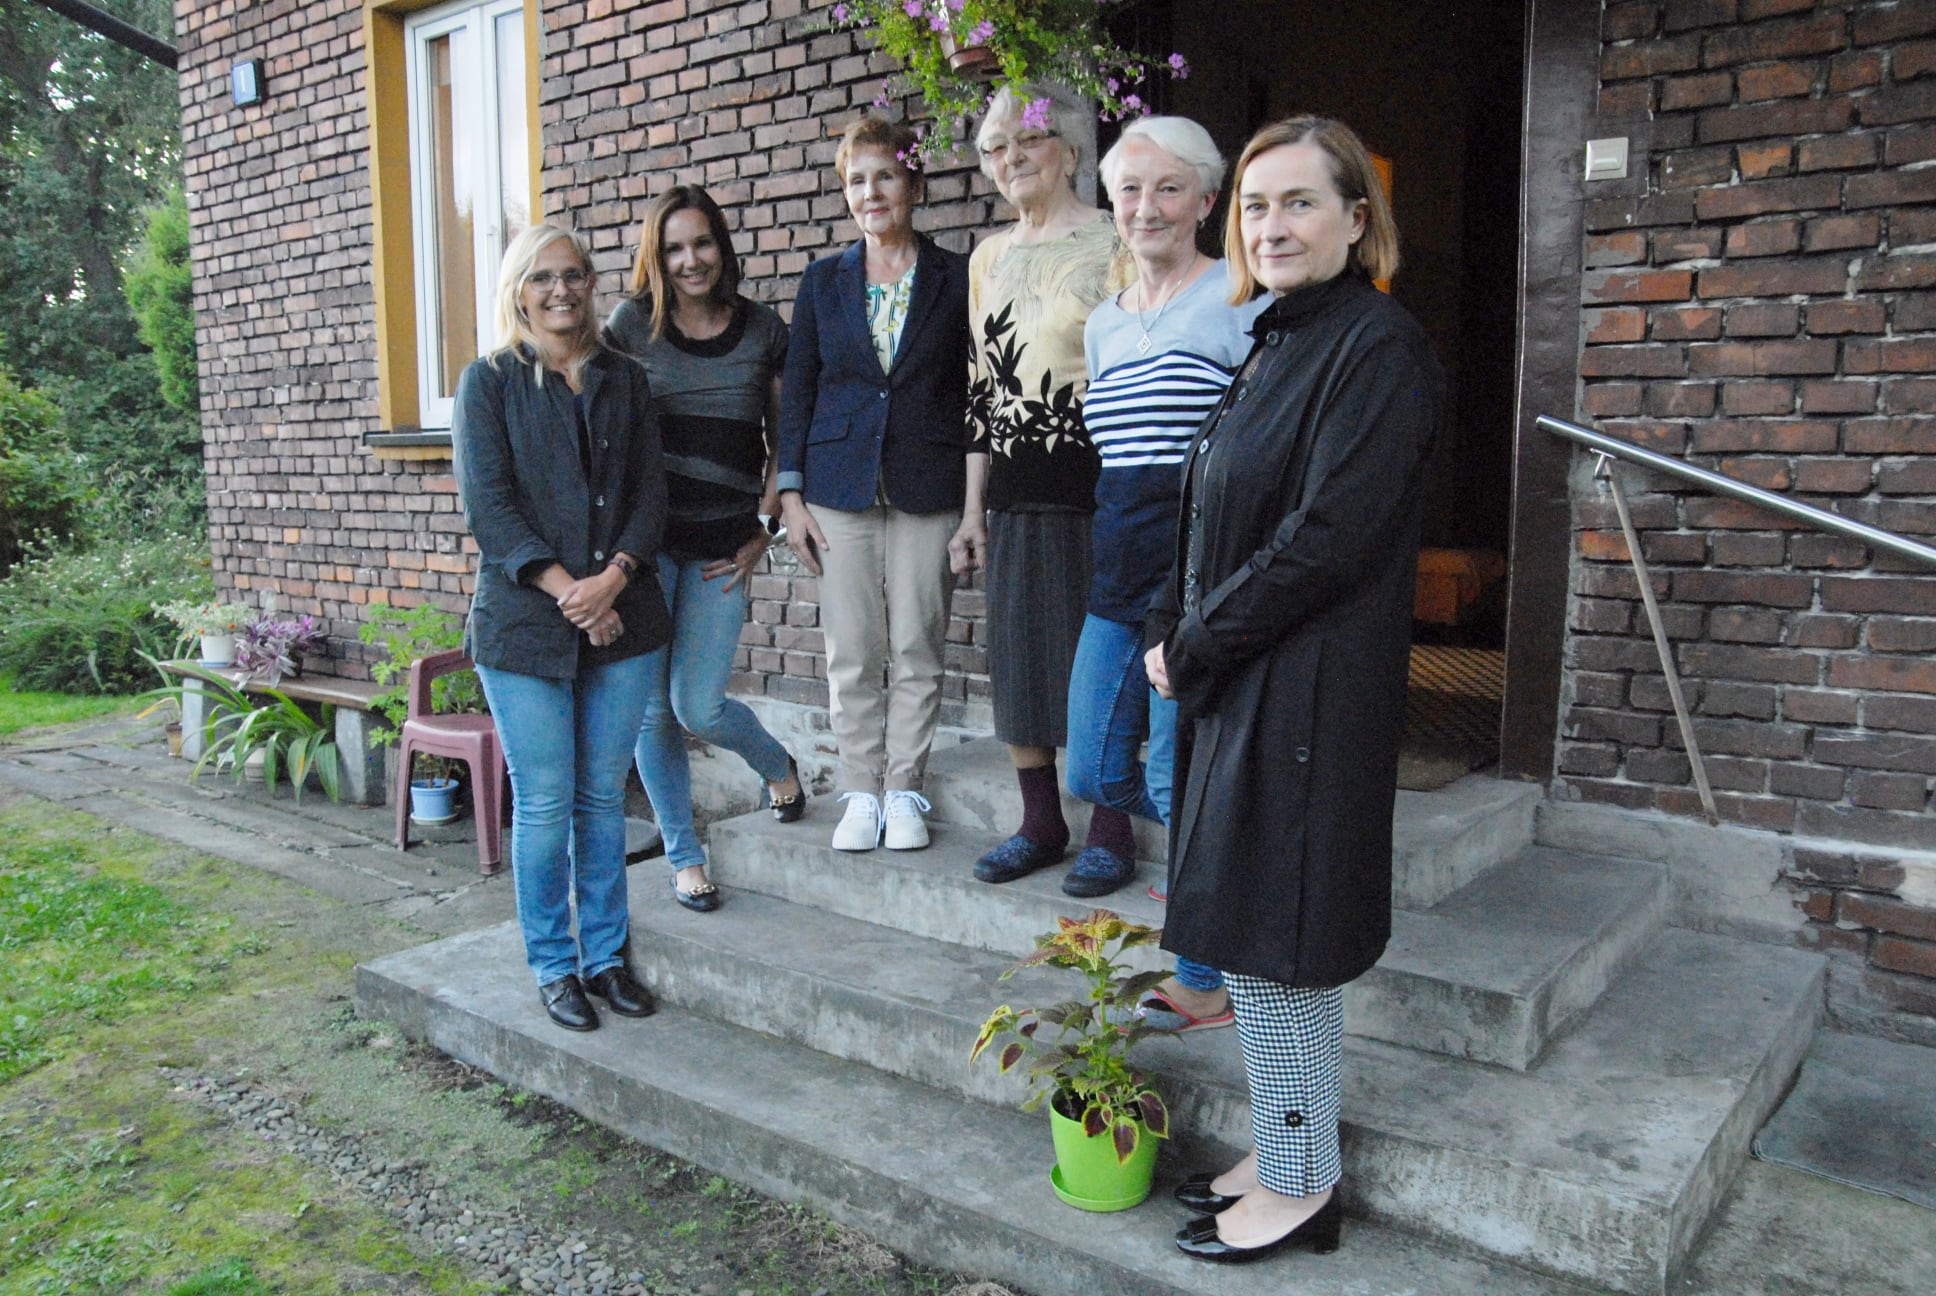 Na schodach domu w Brzeszczach Nazieleńcach stoją (od lewej): Joanna Cebulska, Magdalena Dulińska, Krystyna Dulińska, Helena Wajdzik, Teresa Jankowska